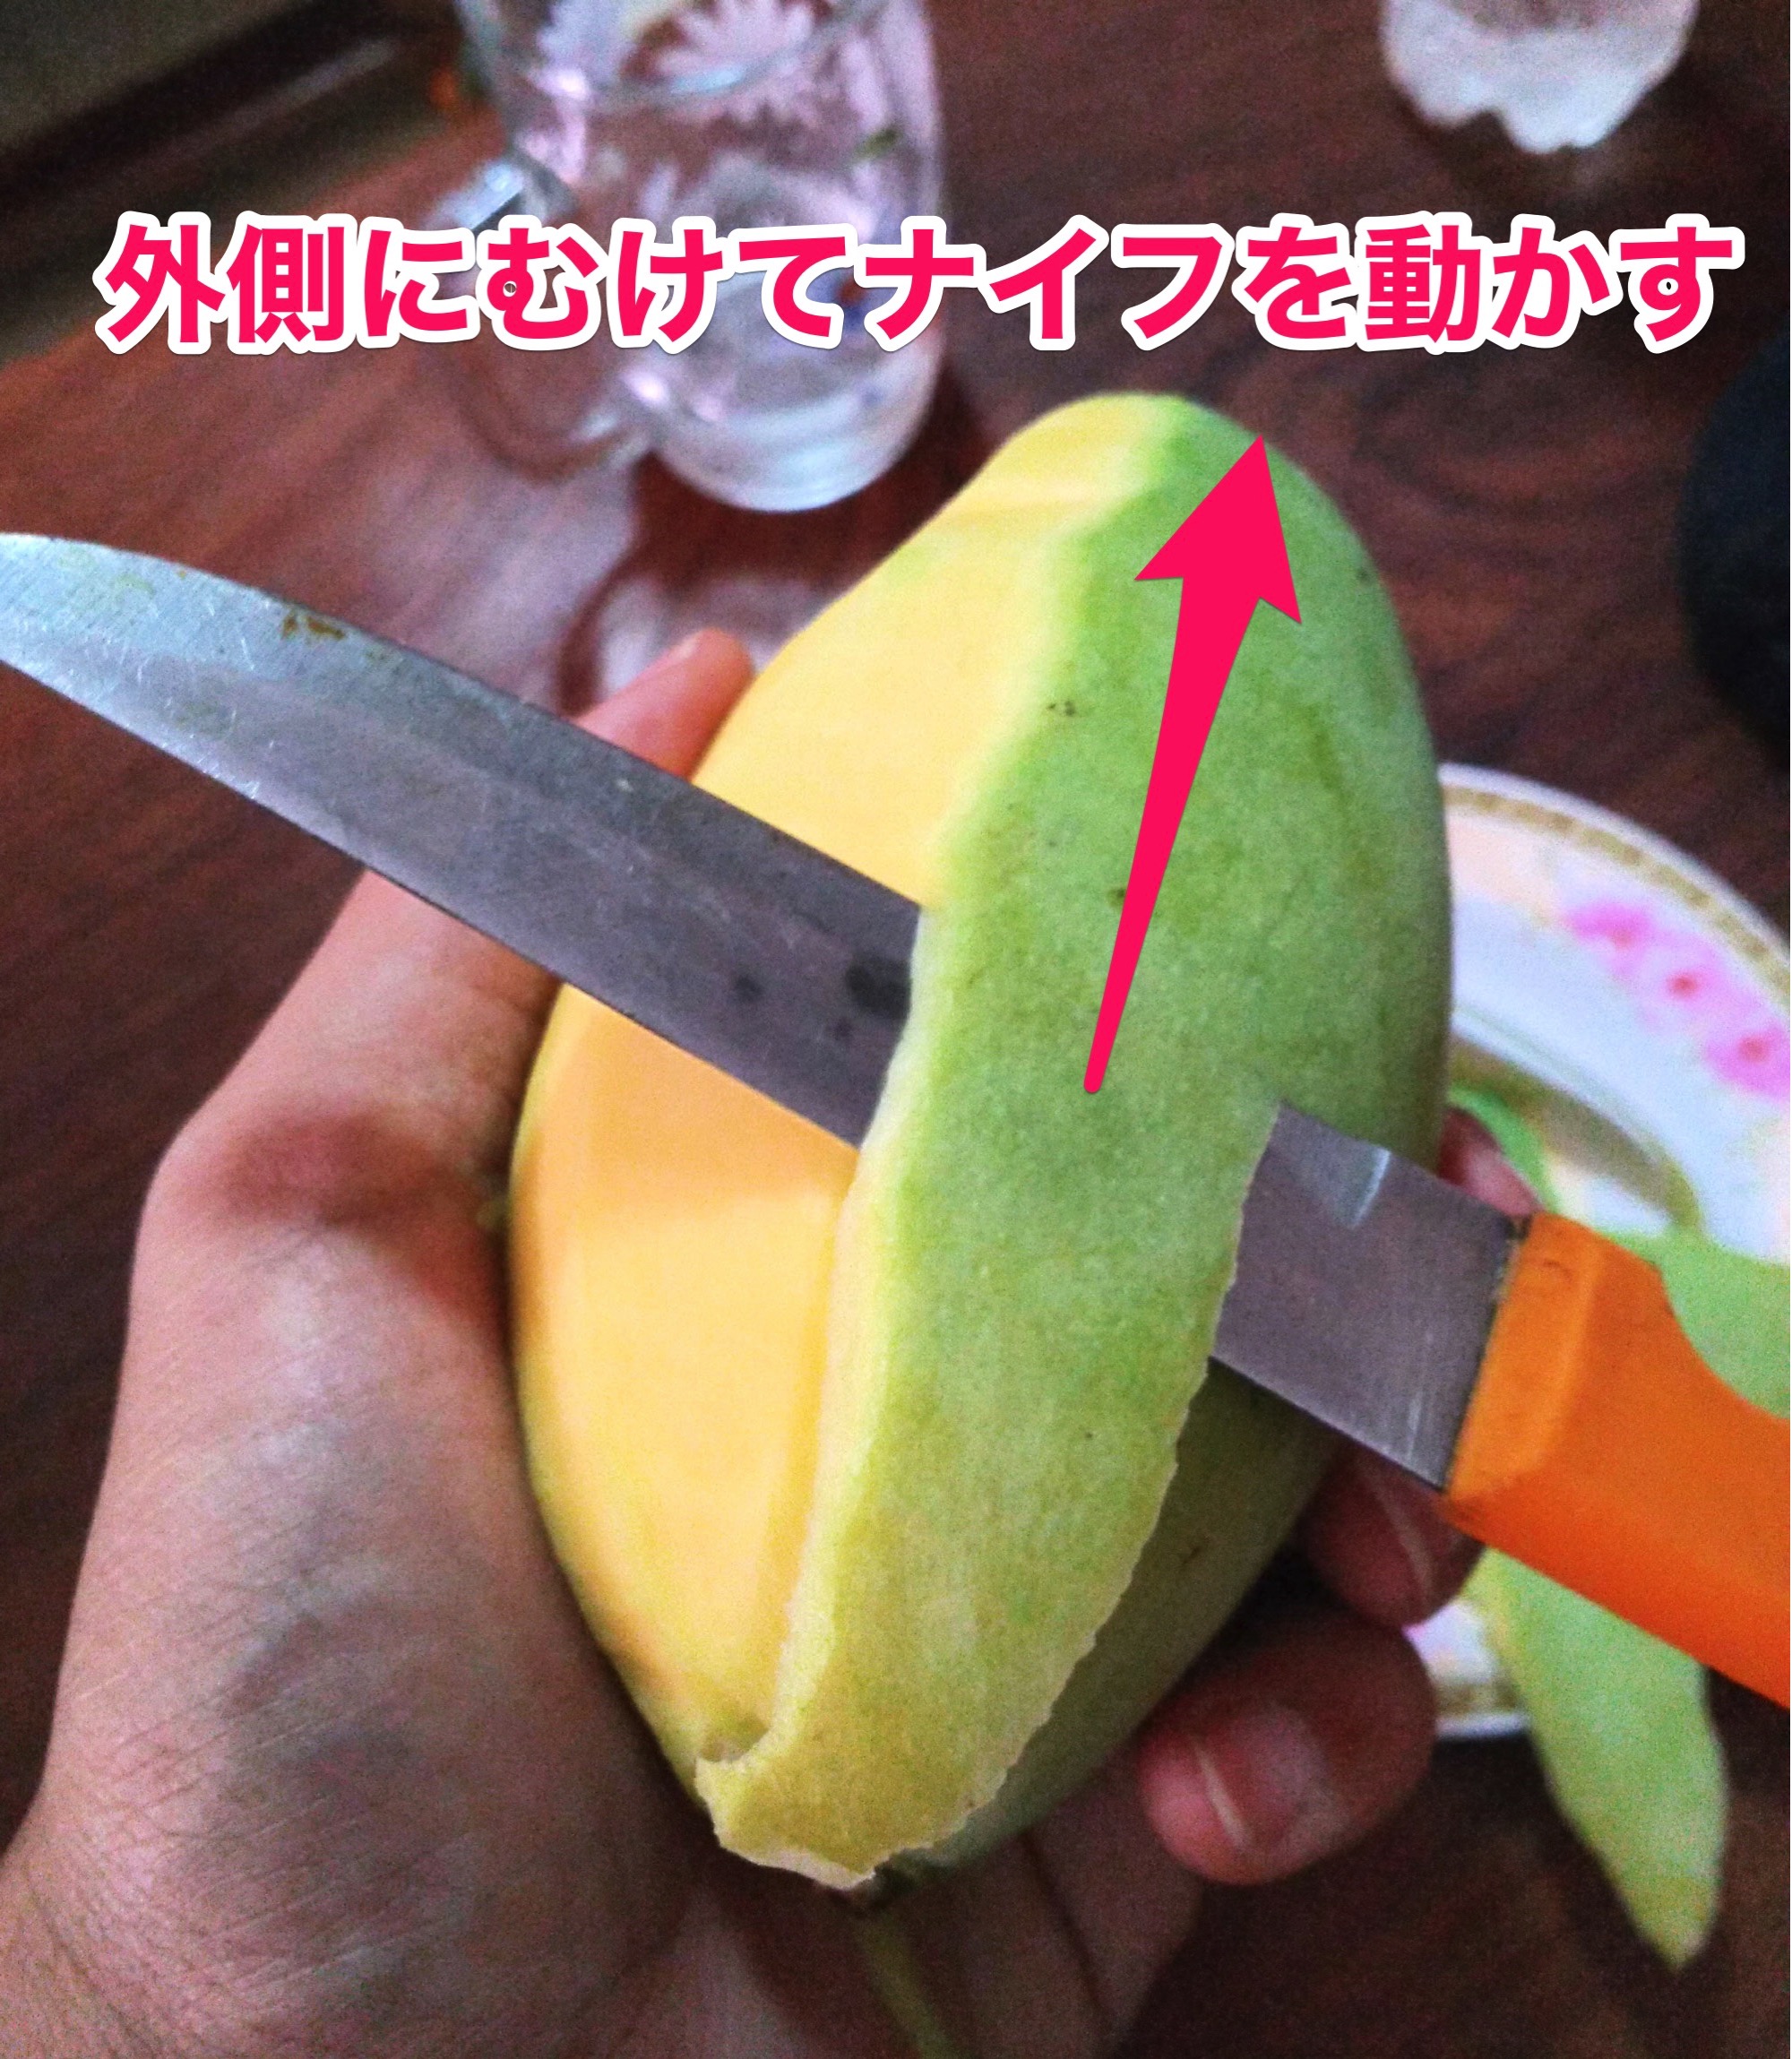 カンボジアのナイフの使い方